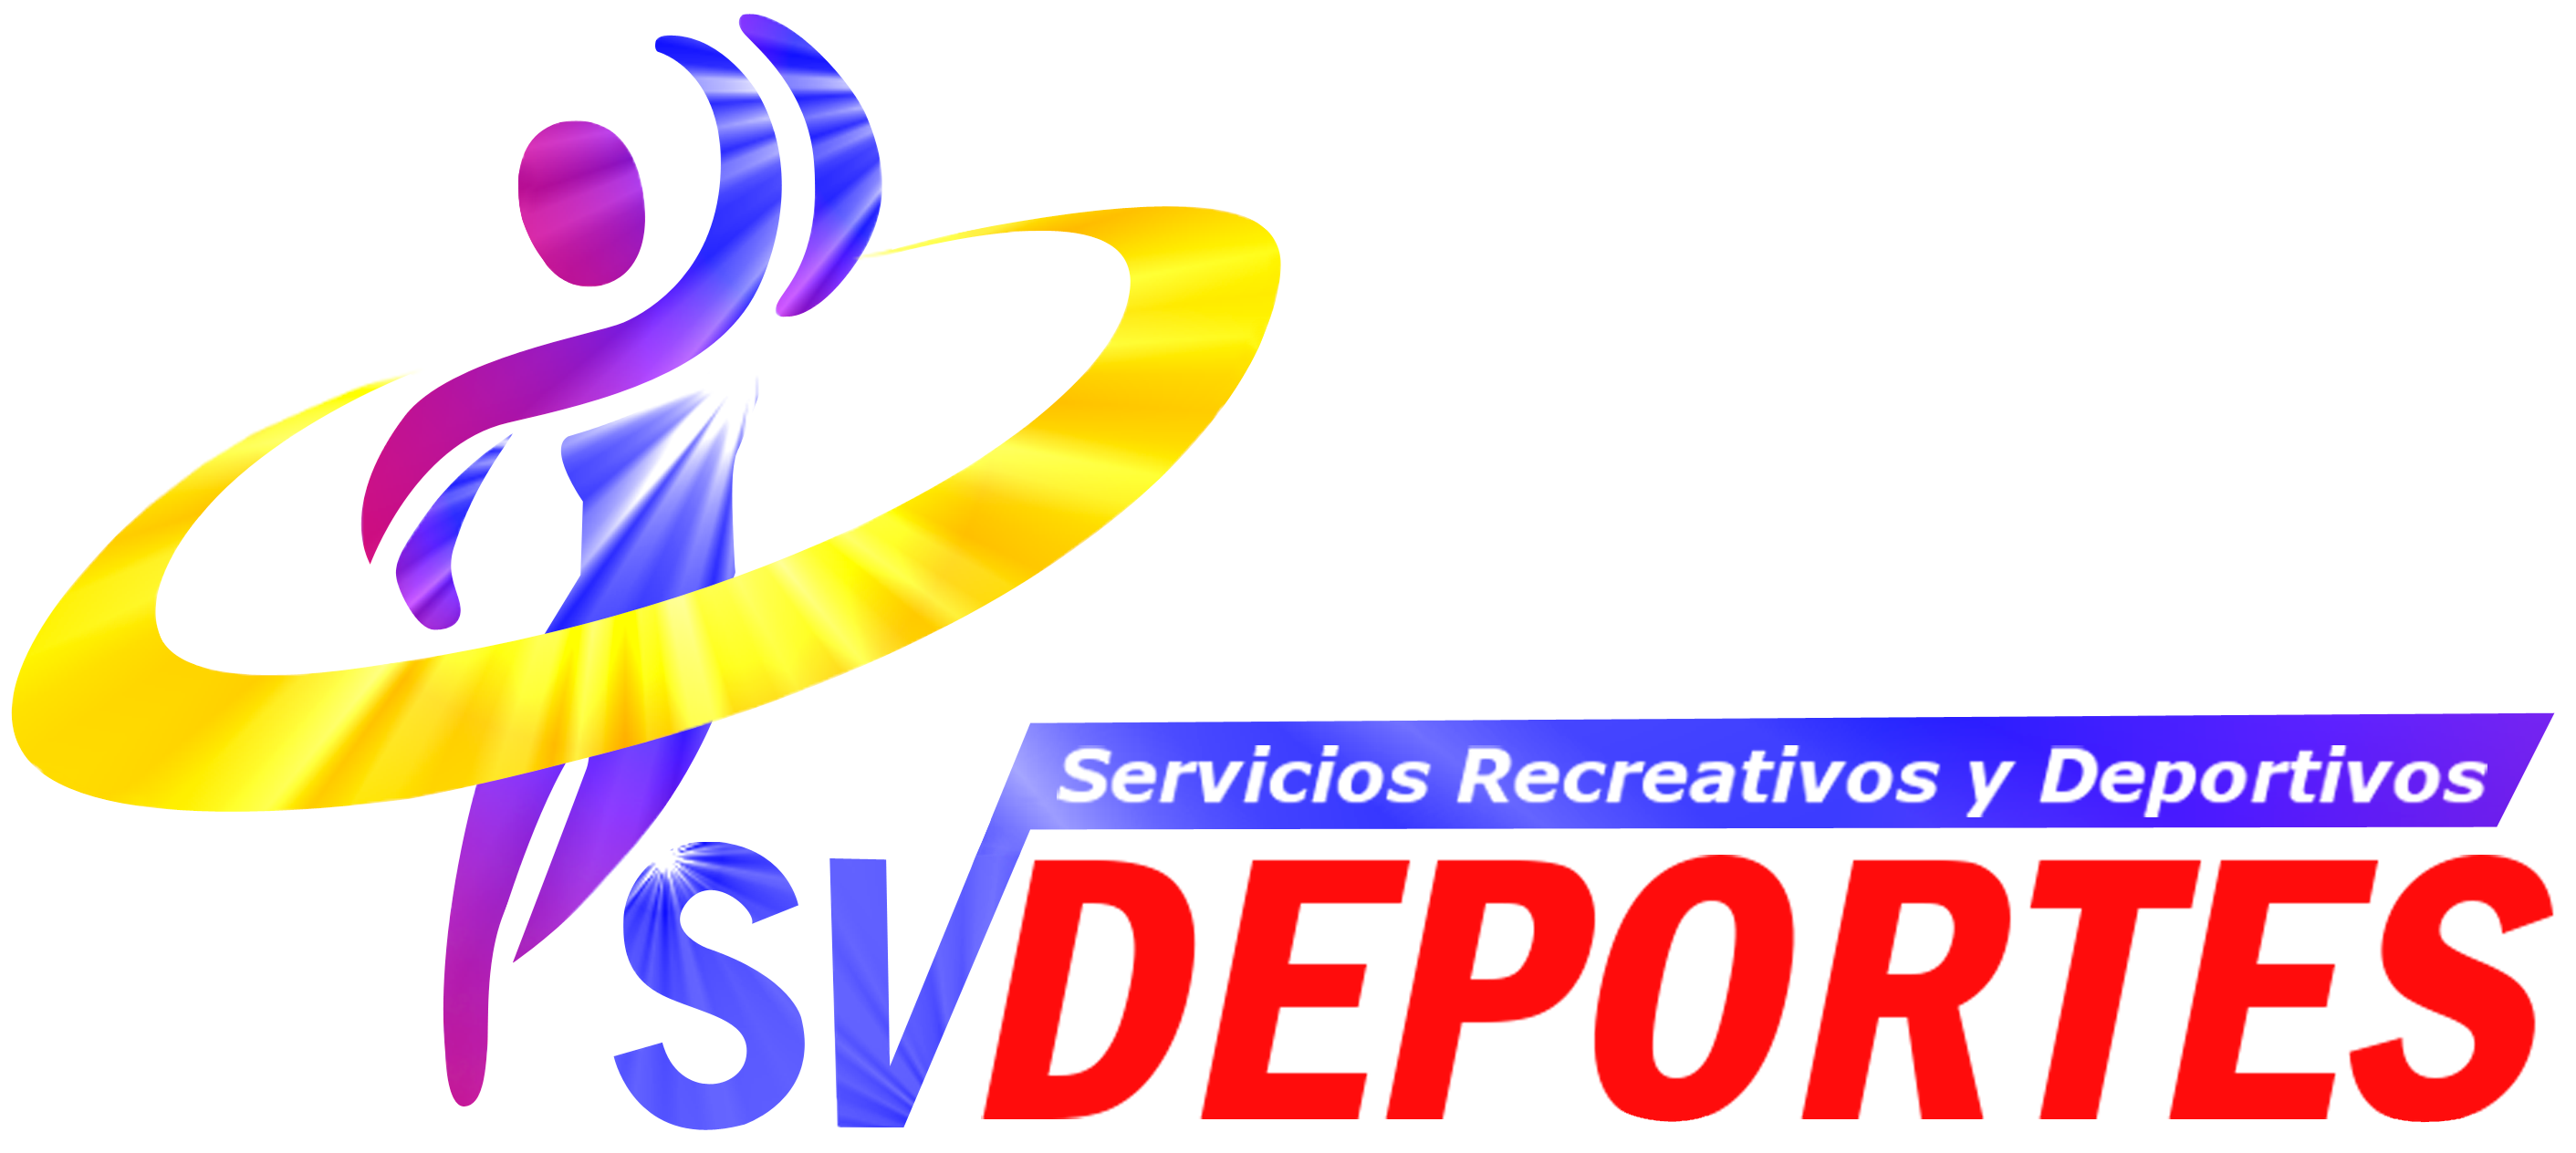 Svdeportes El Salvador